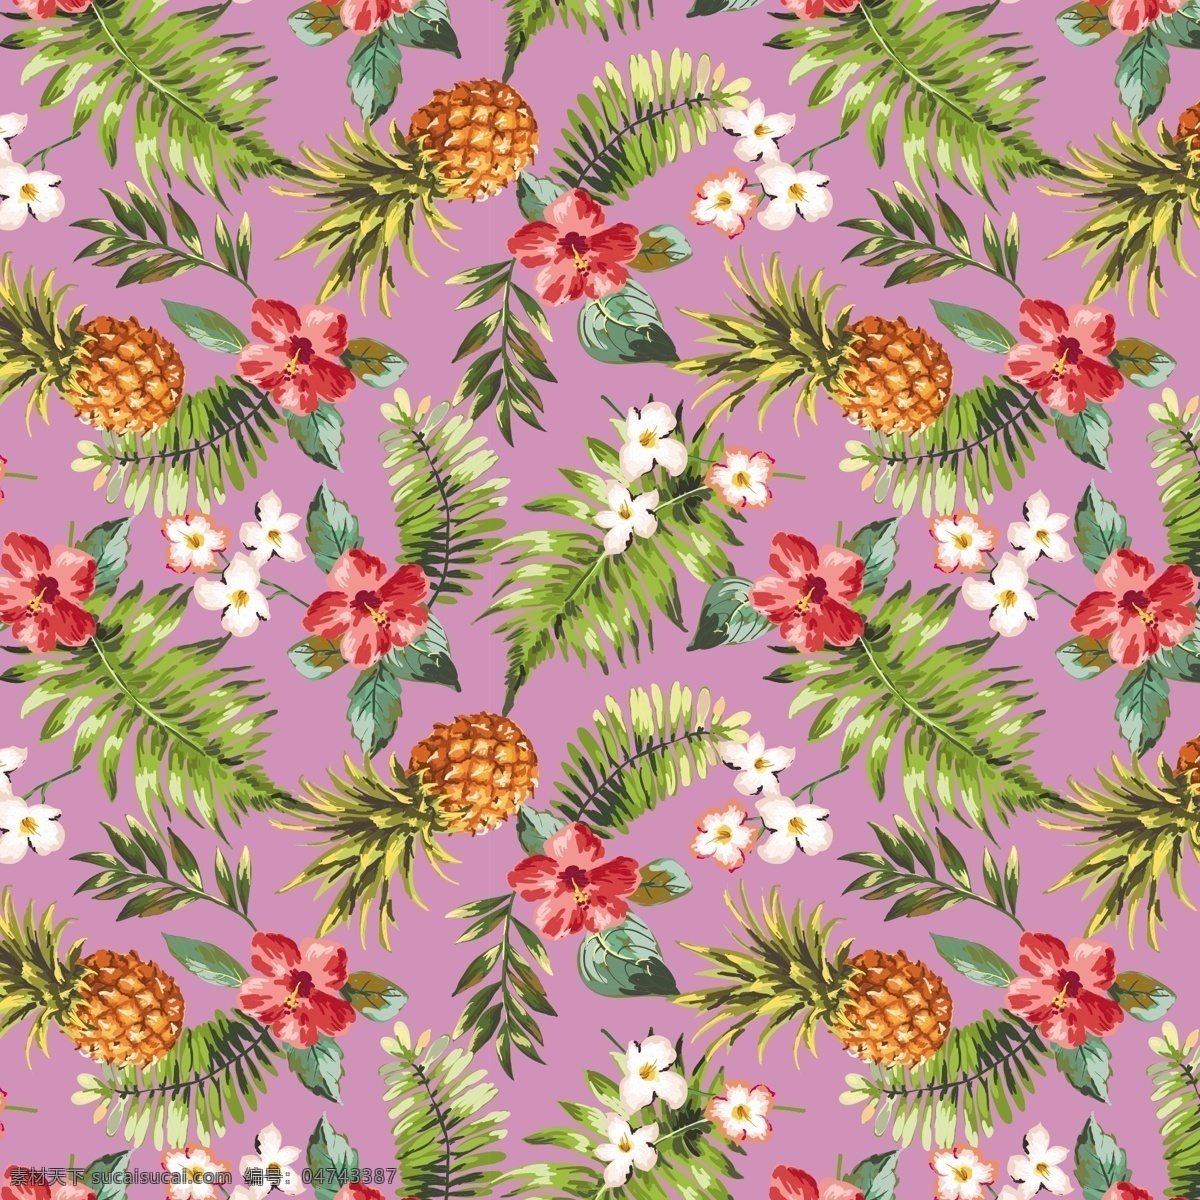 热带雨林风 应用 服装辅料 热带 菠萝 花卉 碎花 组合 底纹边框 背景底纹